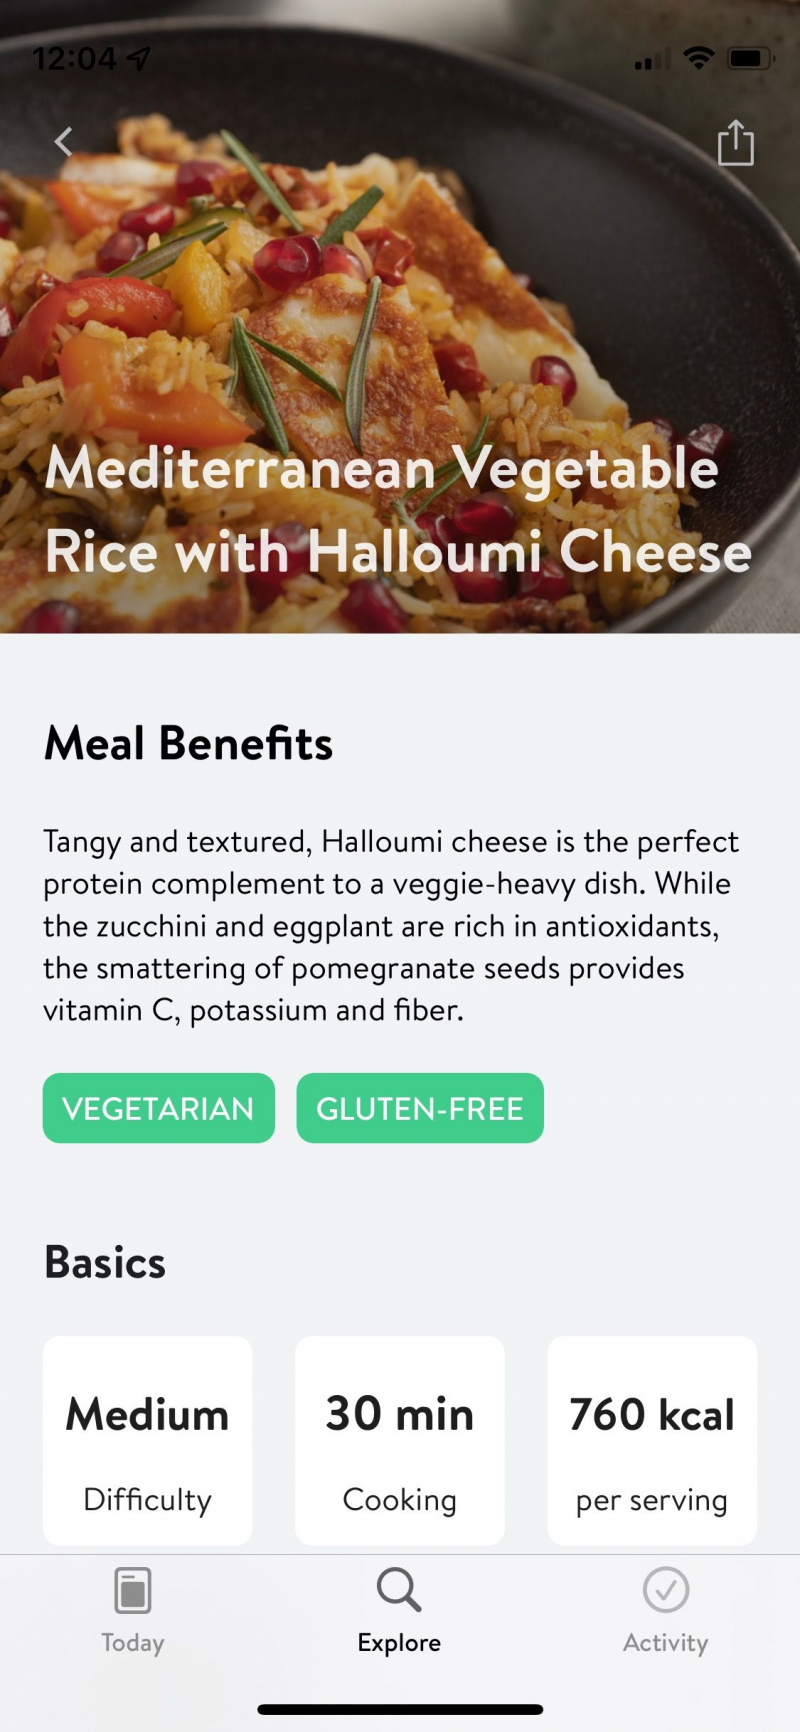   Captura de pantalla de la aplicación Asana Rebel que muestra una receta de muestra para arroz vegetal